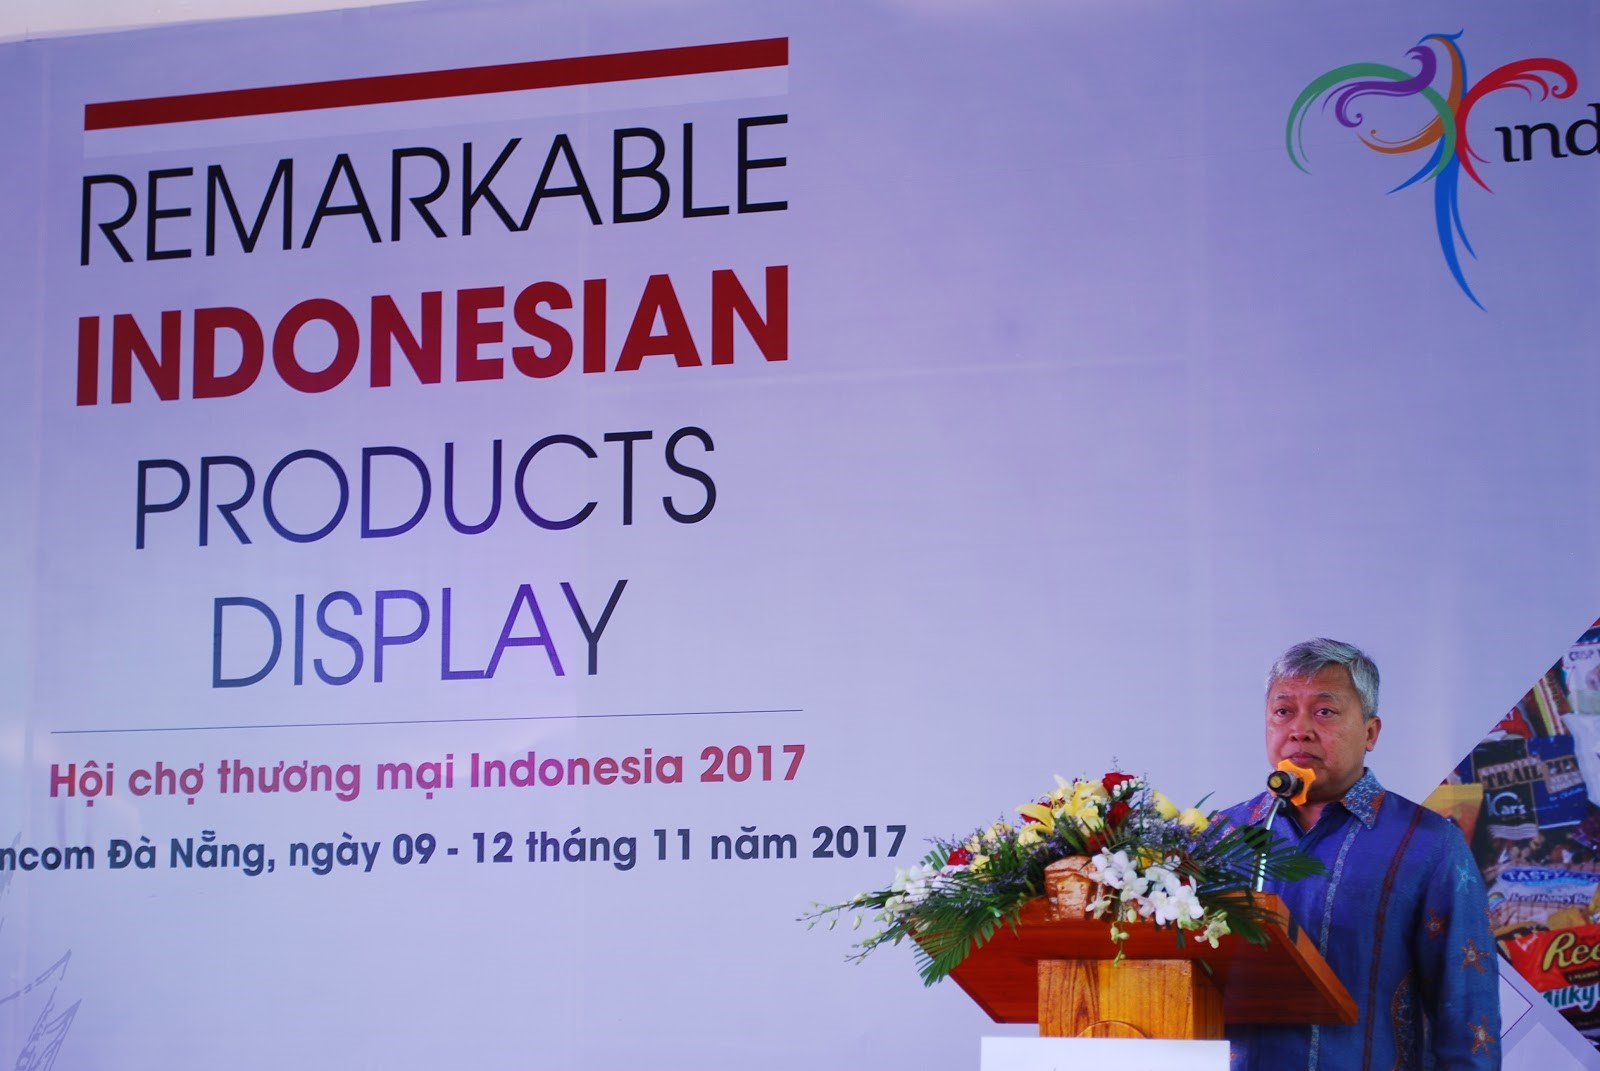 Ông Ibnu Hadi - Đại sứ đặc mệnh toàn quyền Indonesia  tại Việt Nam phát biểu tại lễ khai mạc hội chợ.